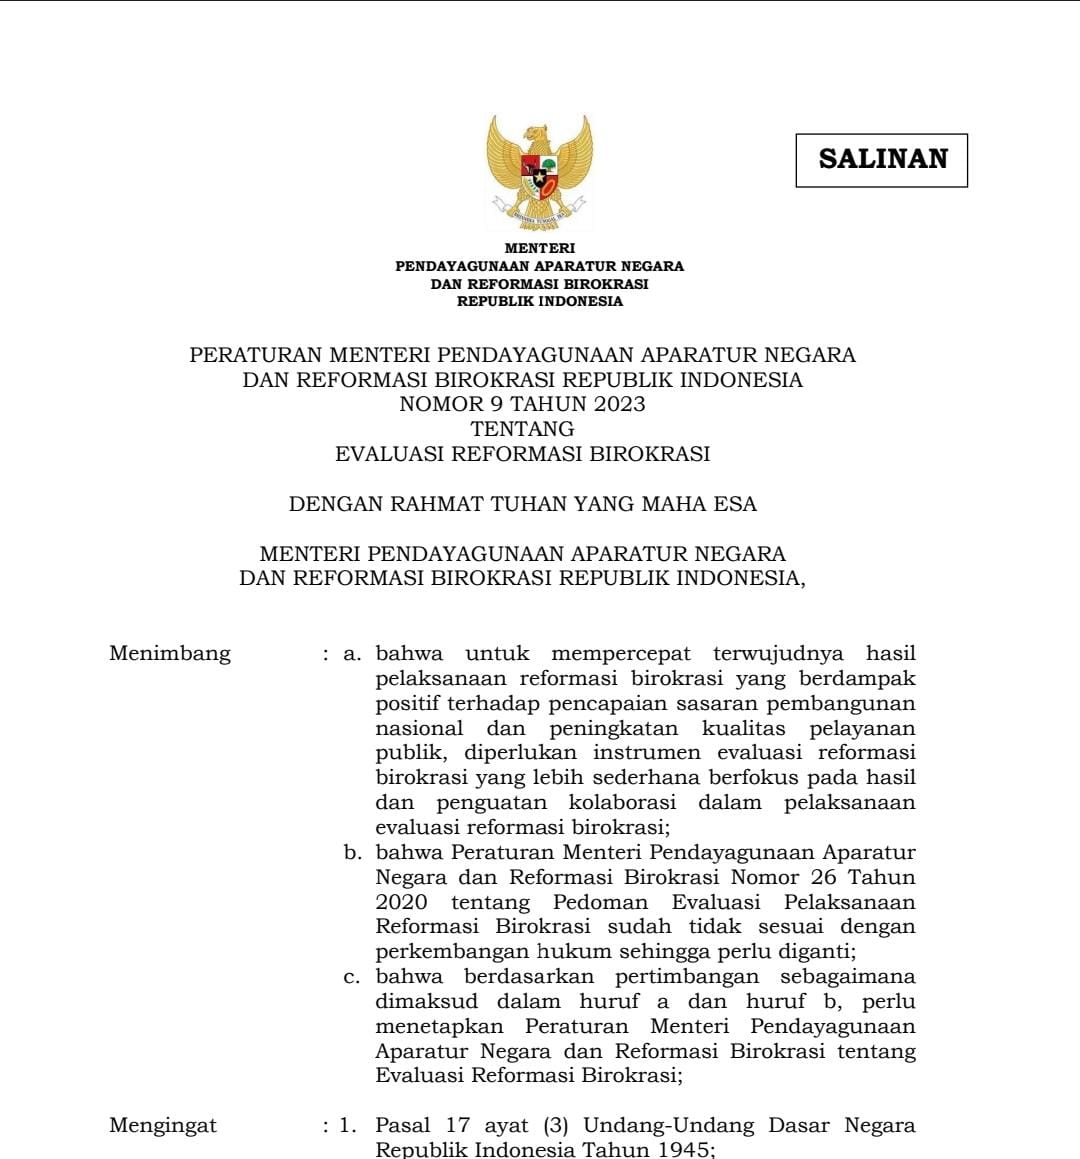 Peraturan Menteri Pendayagunaan Aparatur Negara dan Reformasi Birokrasi Republik Indonesia Nomor 9 Tahun 2023